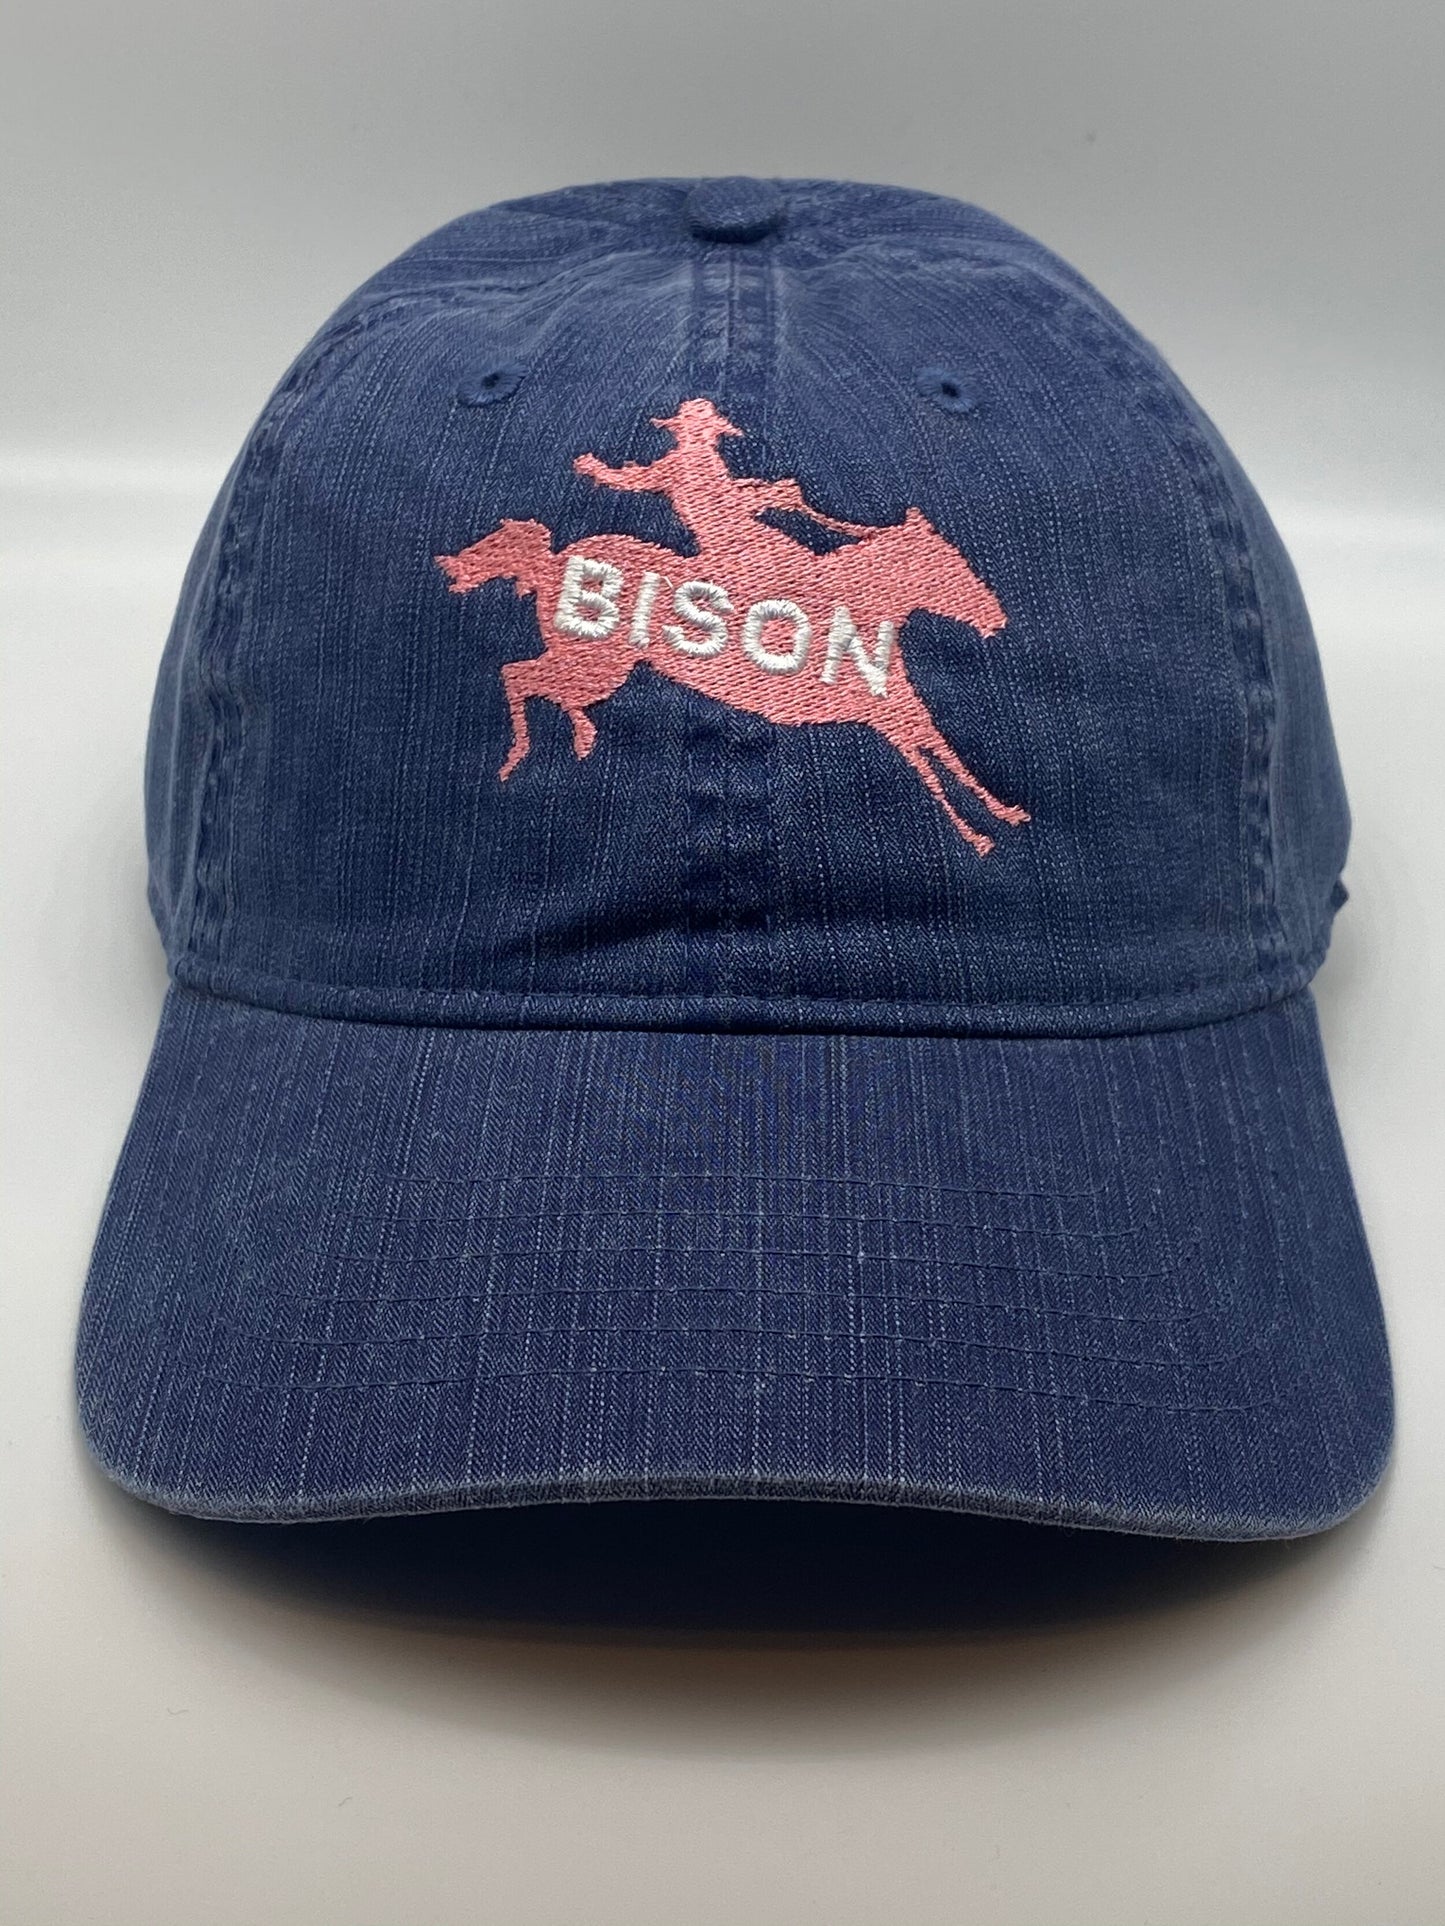 BISON Rodeo Denim Hat